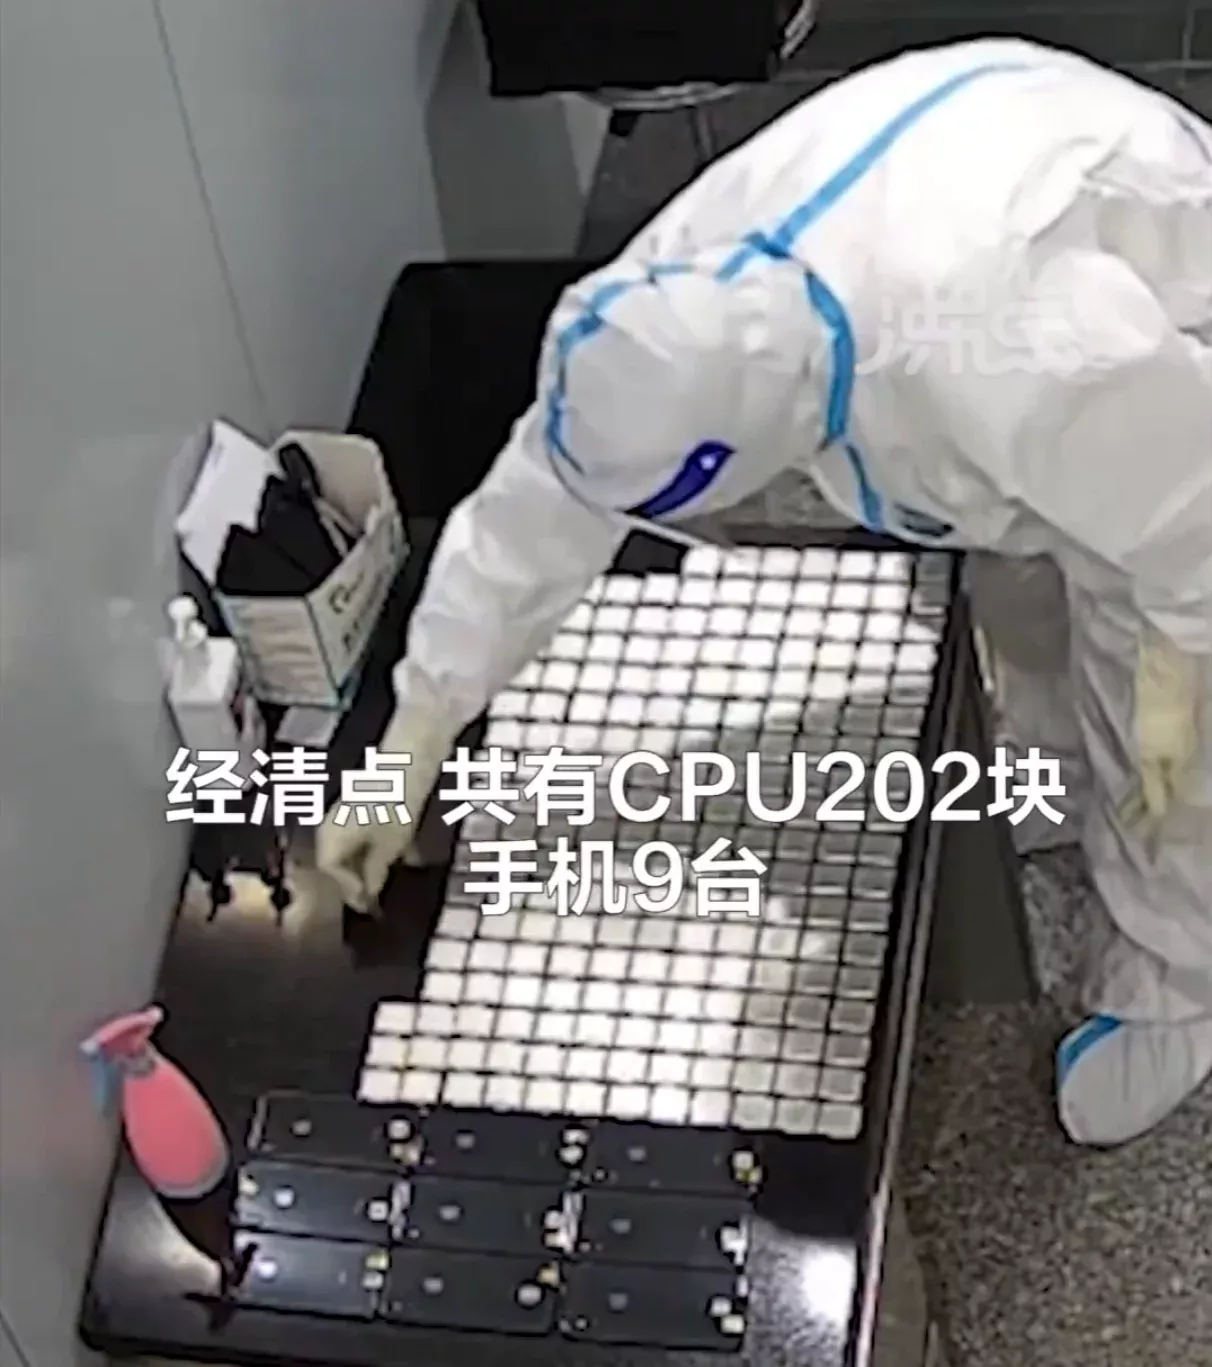 Китаянка пыталась провести 200 процессоров Intel, притворяясь беременной